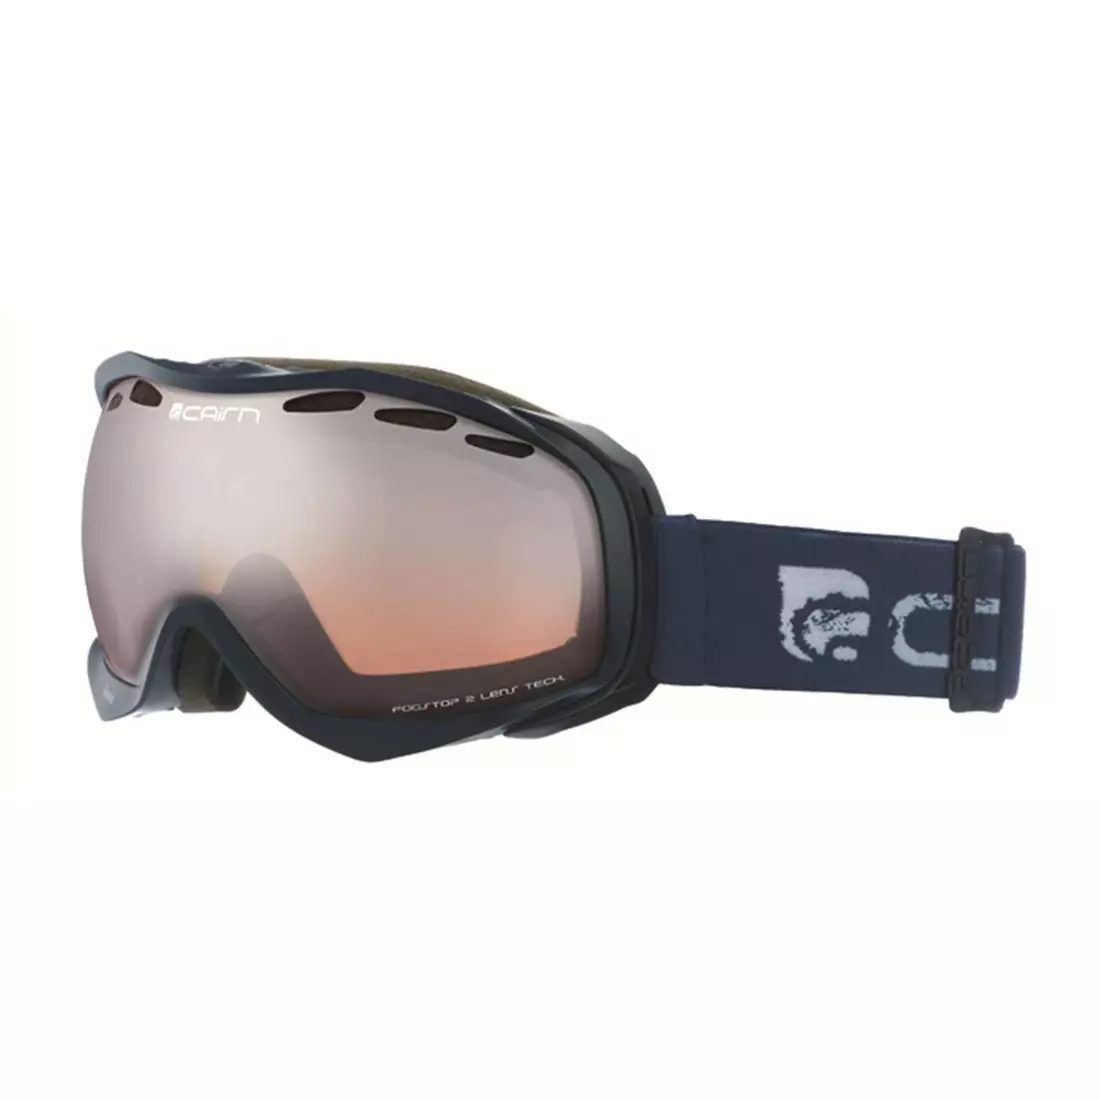 CAIRN ochelari de schi/snowboard SPEED SPX3000 805, black, 580340805